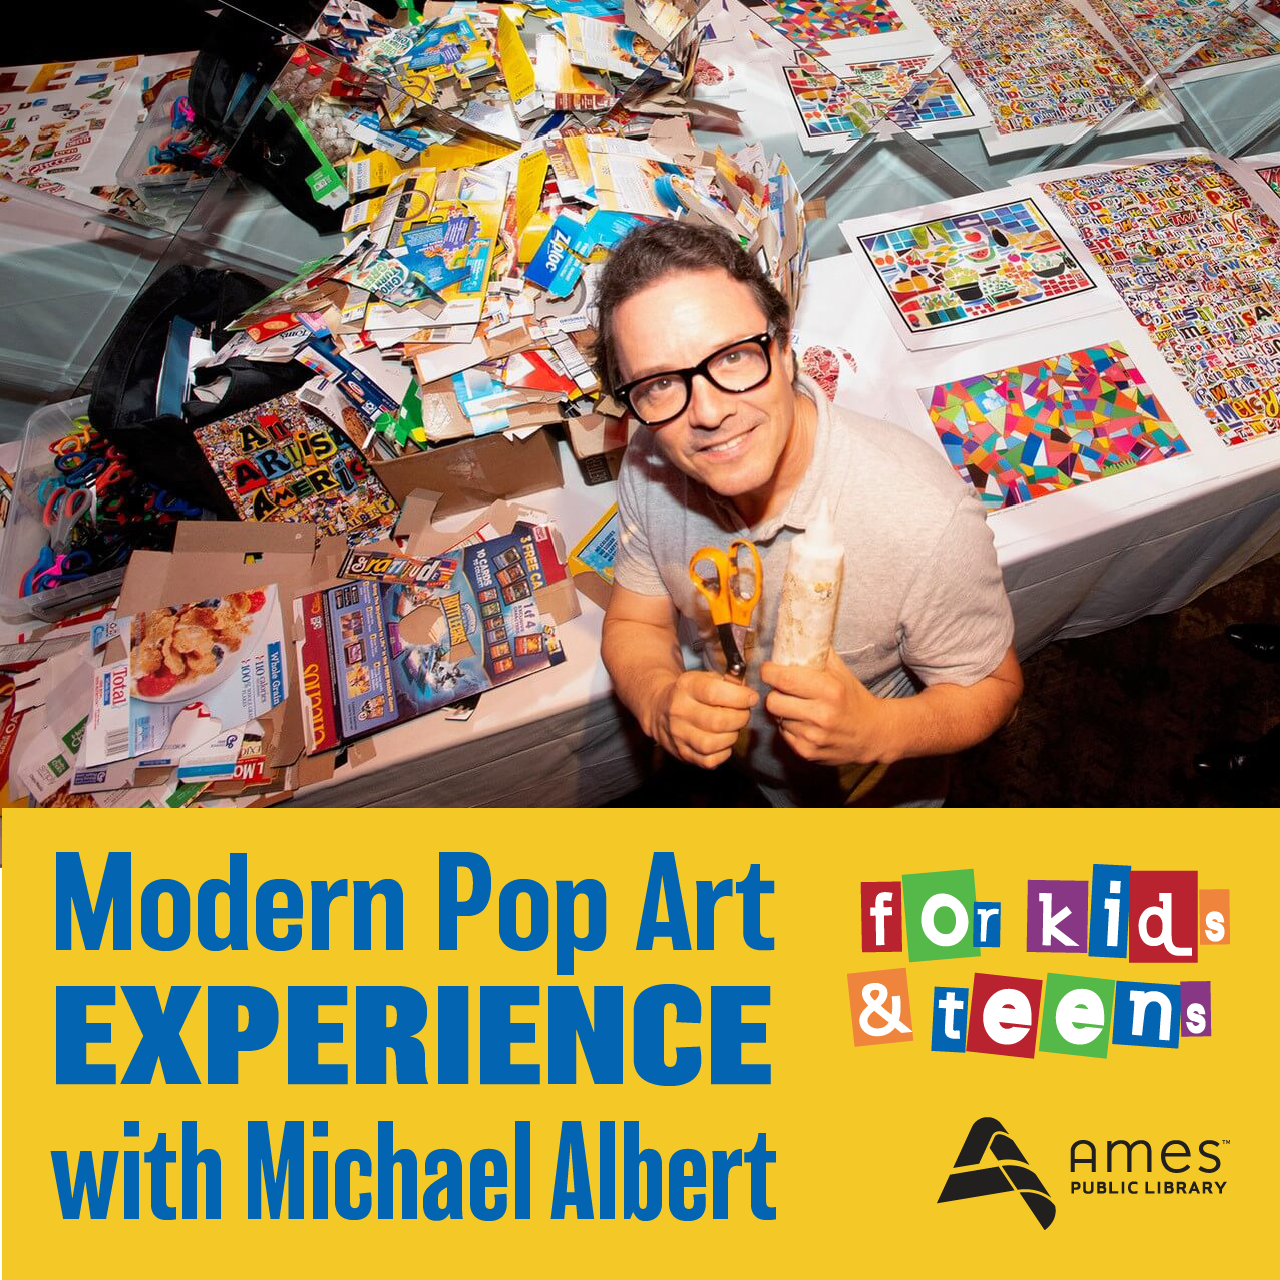 Modern Pop Art Experience with Michael Albert for Kids & Teens